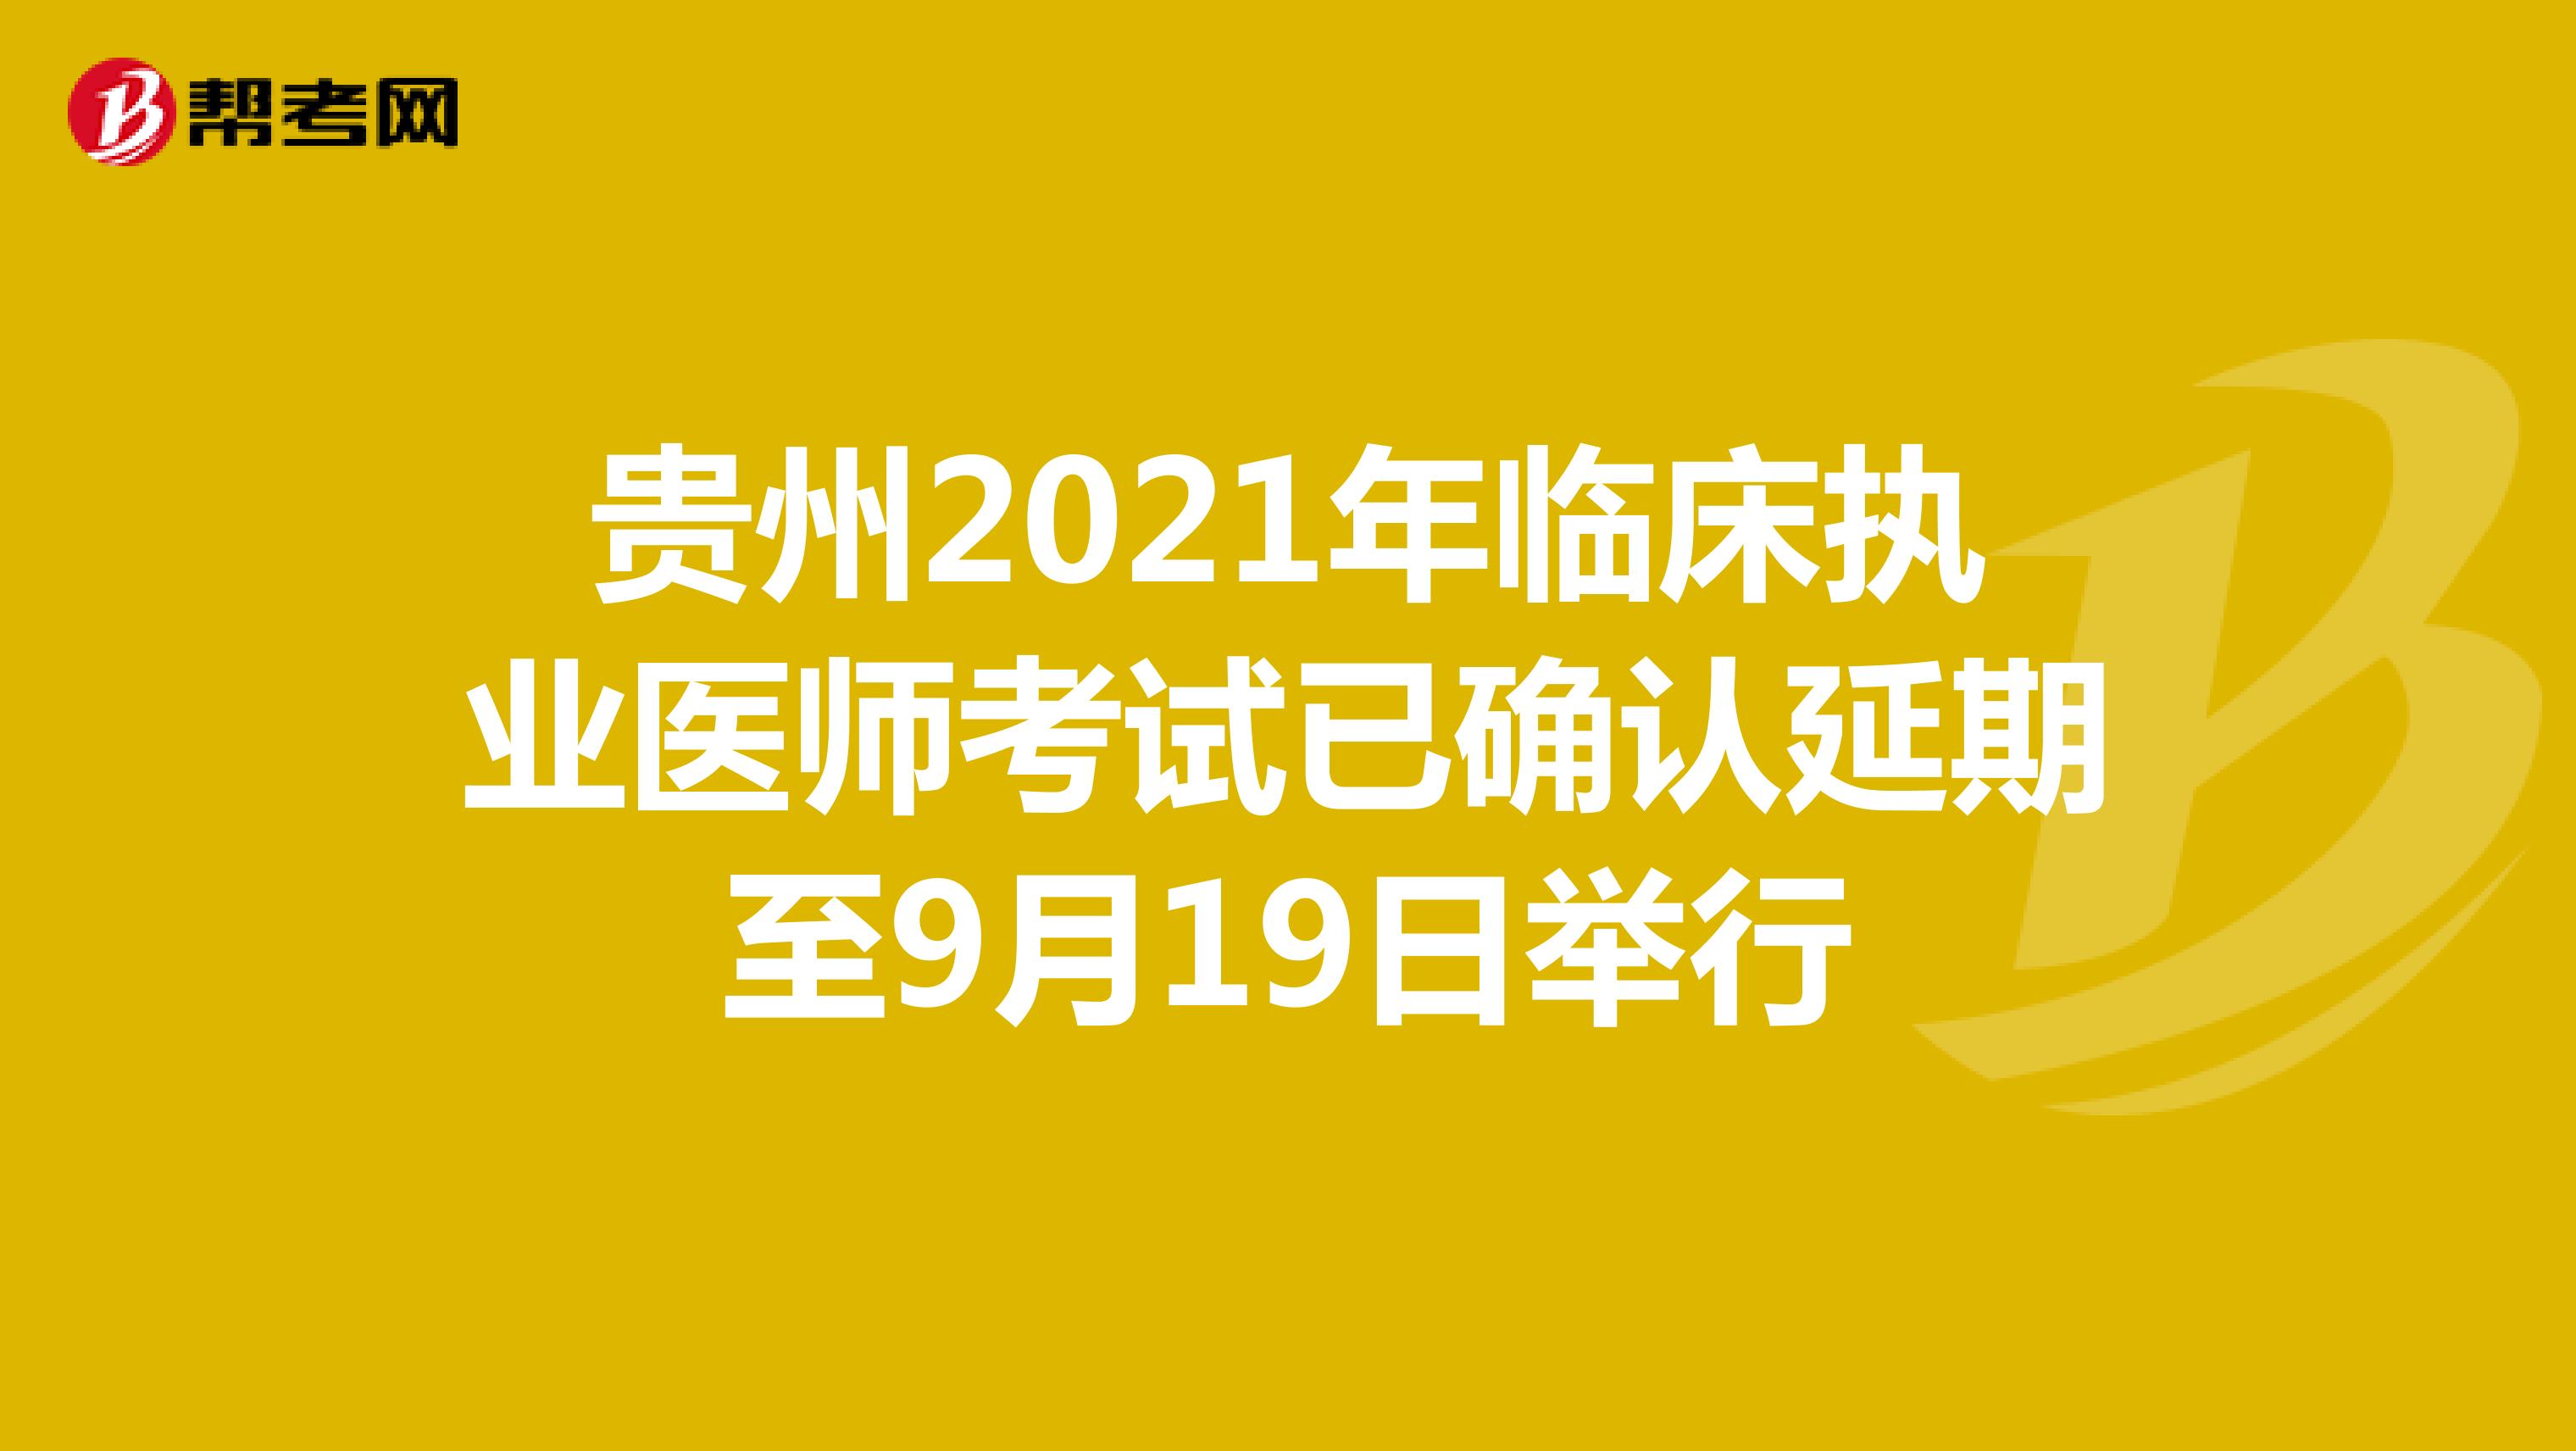 贵州2021年临床执业医师考试已确认延期至9月19日举行